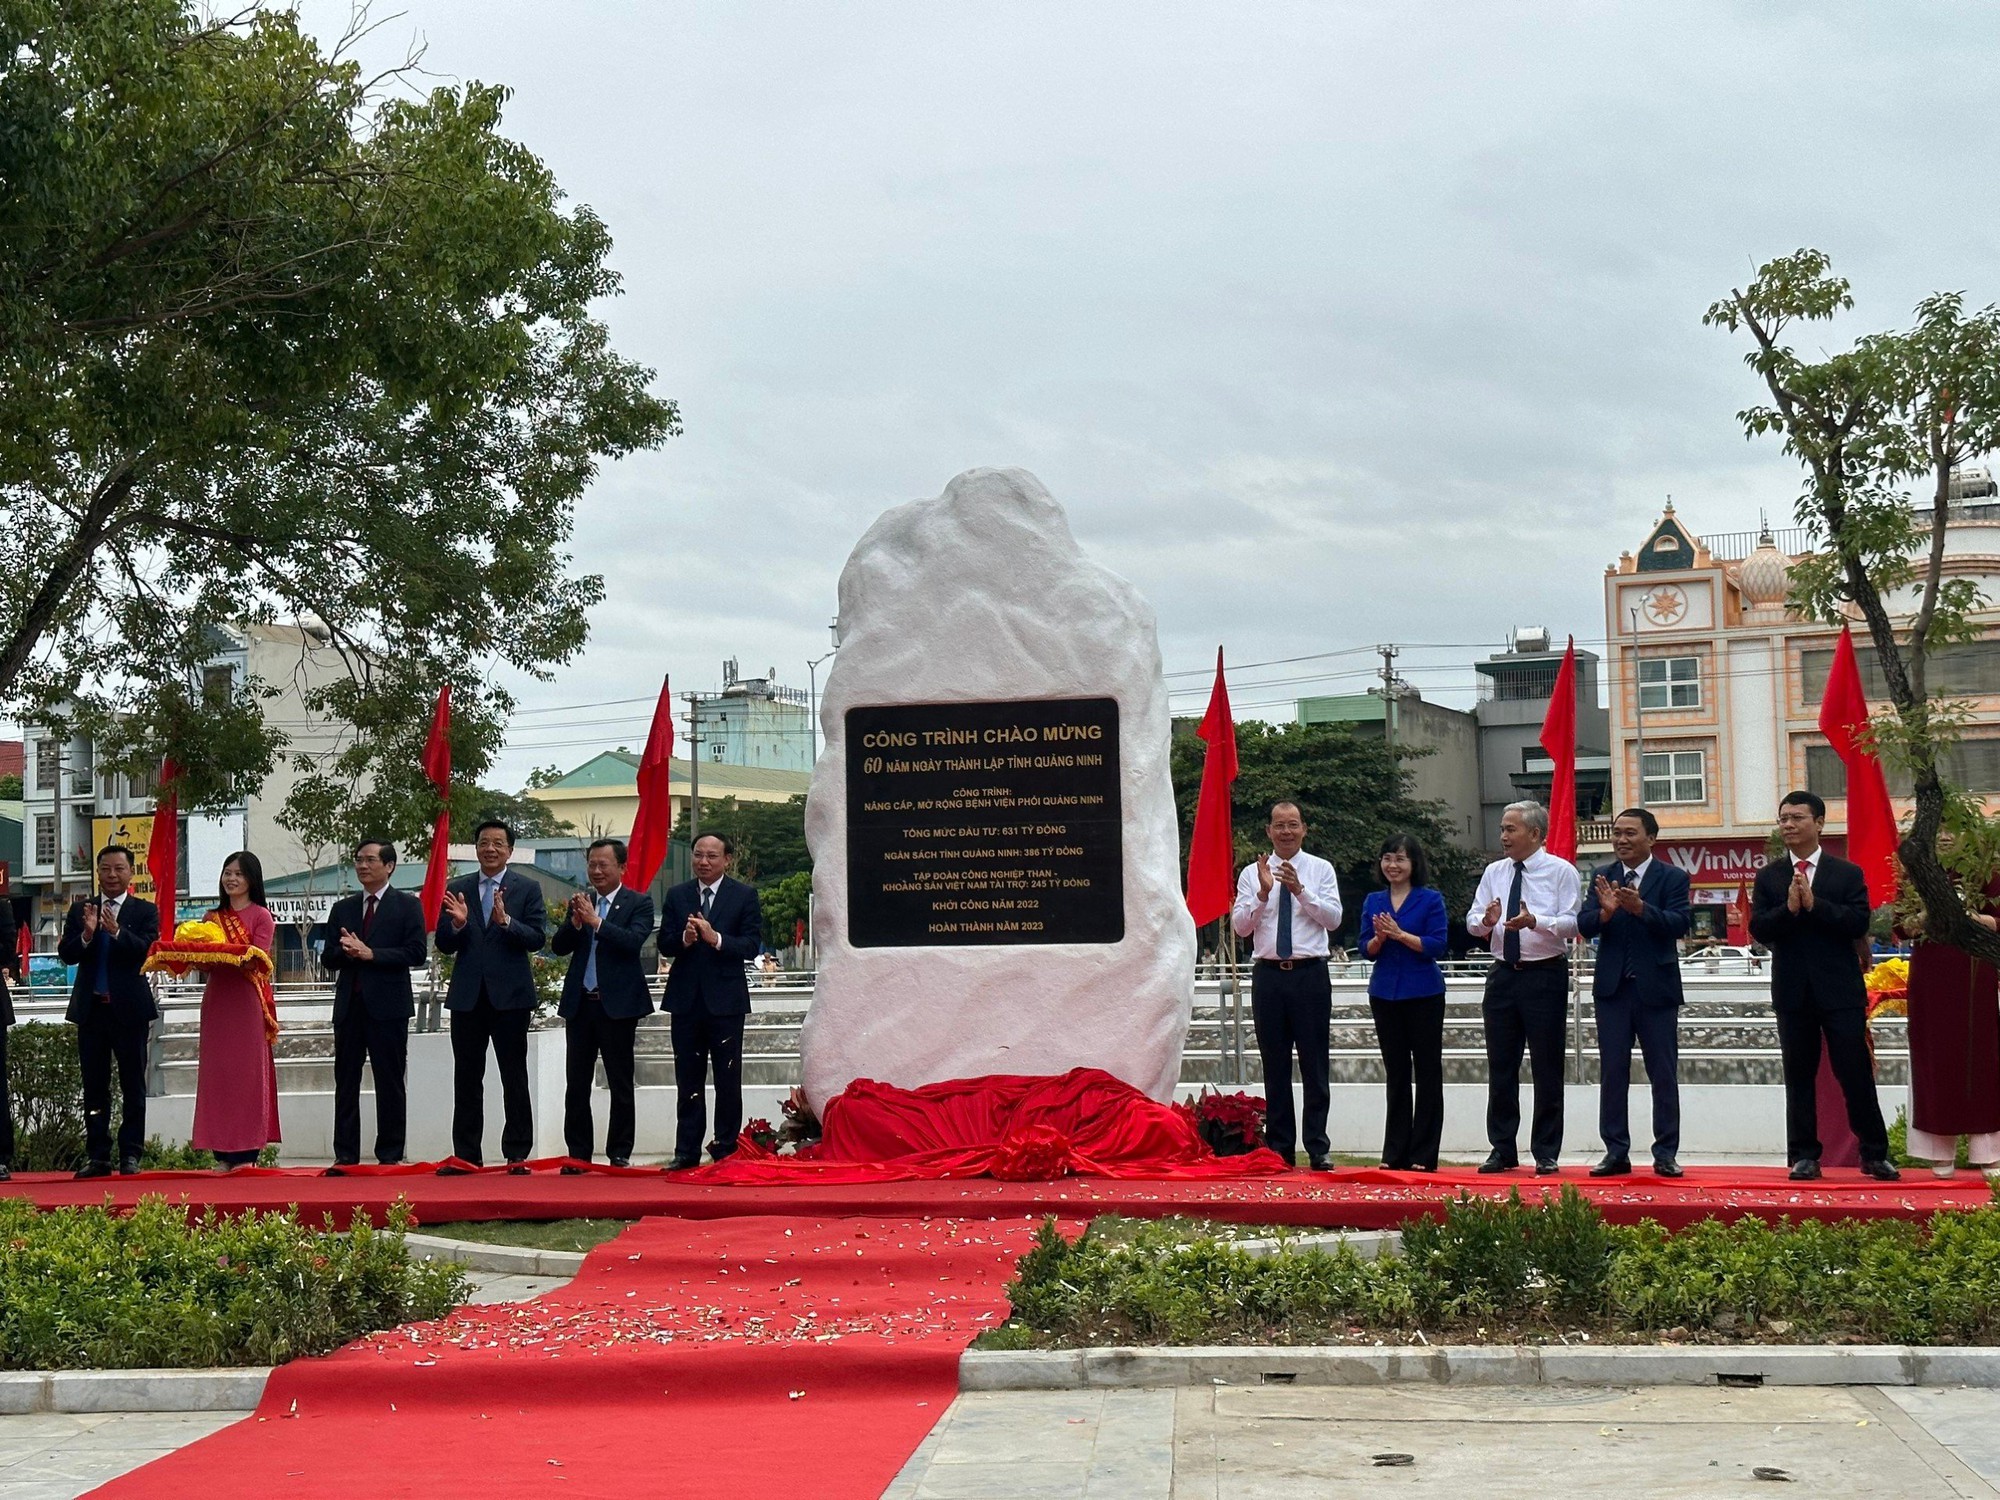 Gắn biển và khánh thành hàng loạt công trình chào mừng 60 năm Ngày thành lập tỉnh Quảng Ninh - Ảnh 1.